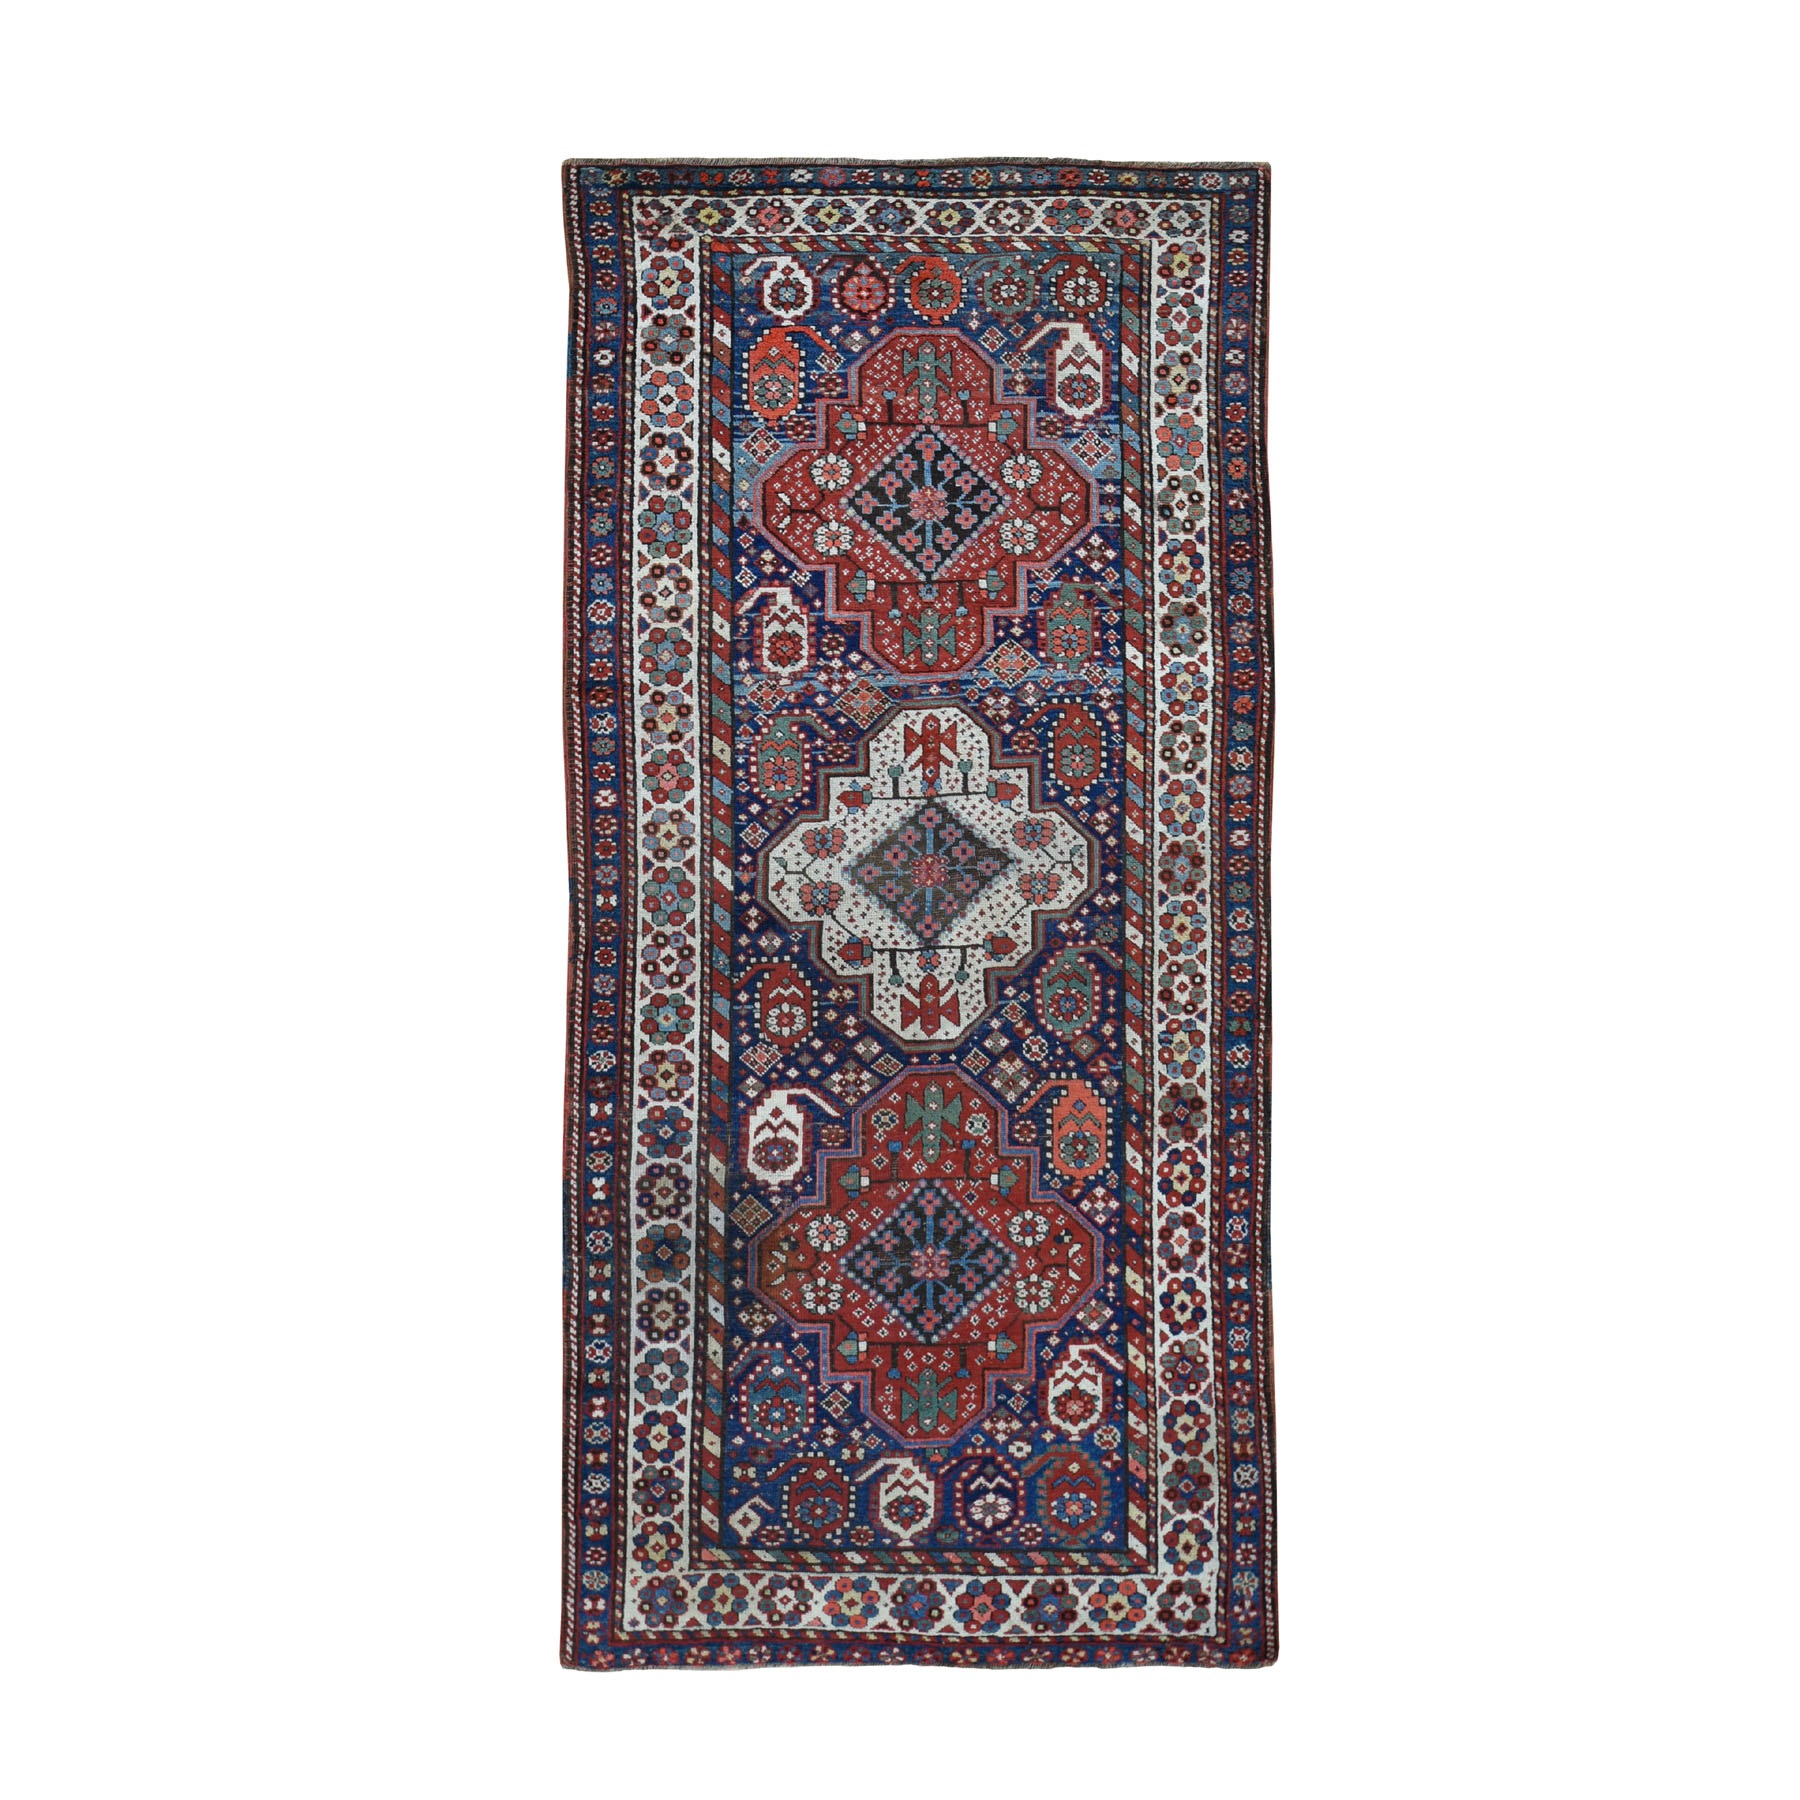 3'9"x8' Blue Antique Caucasian Kazak Exc Con Hand Woven Wide Runner Oriental Rug 